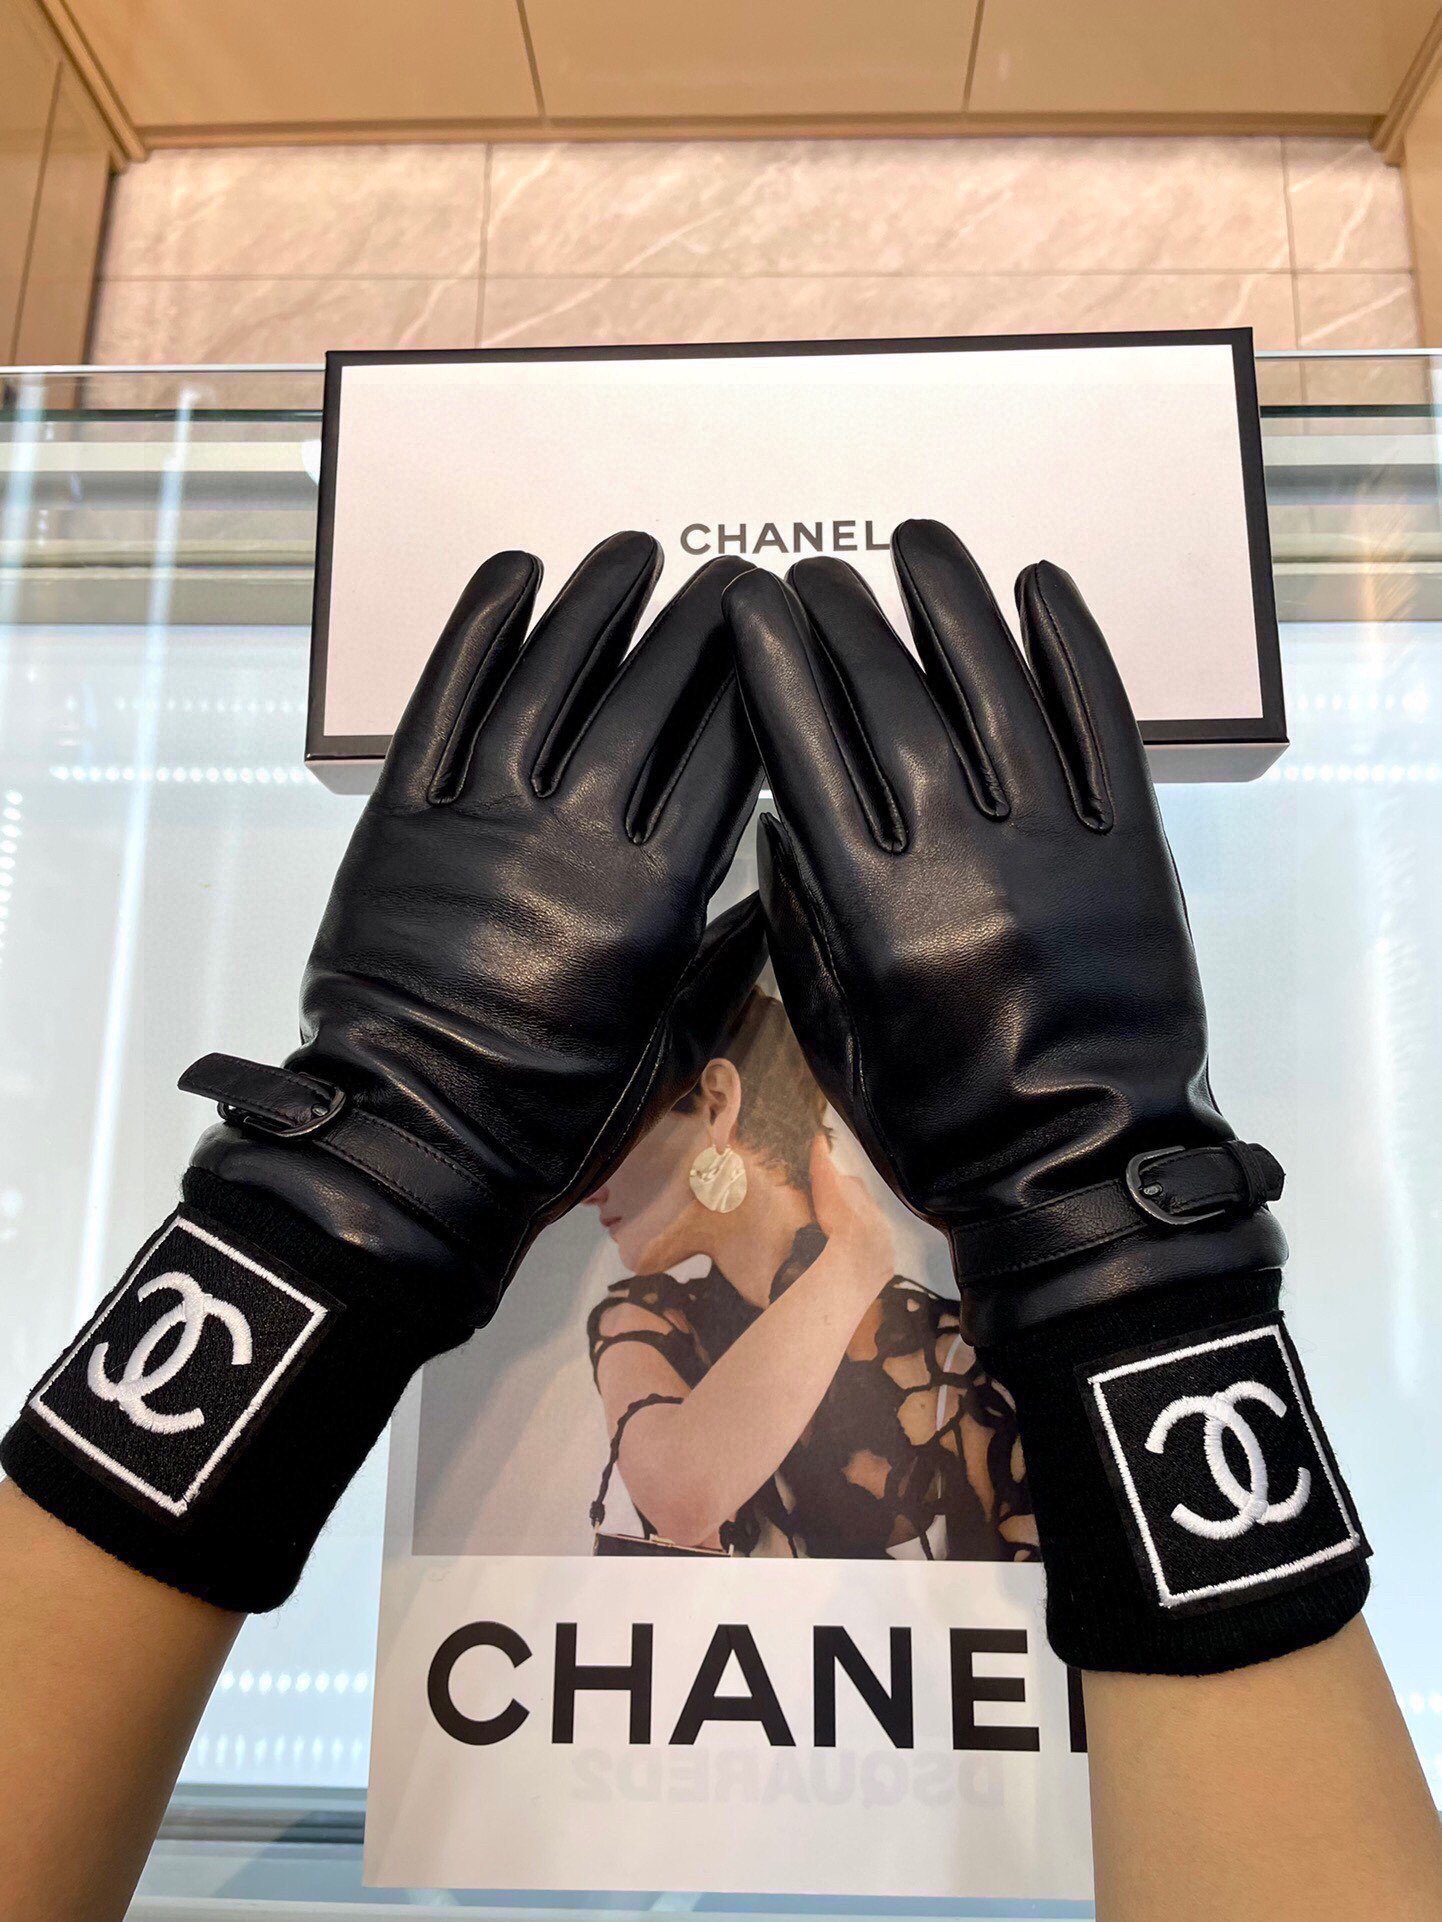 新款独家首发Chanel香奈儿女士新款高档羊皮手套女神首选不可错过一级绵羊皮皮质细腻柔软羊绒内里保暖更佳